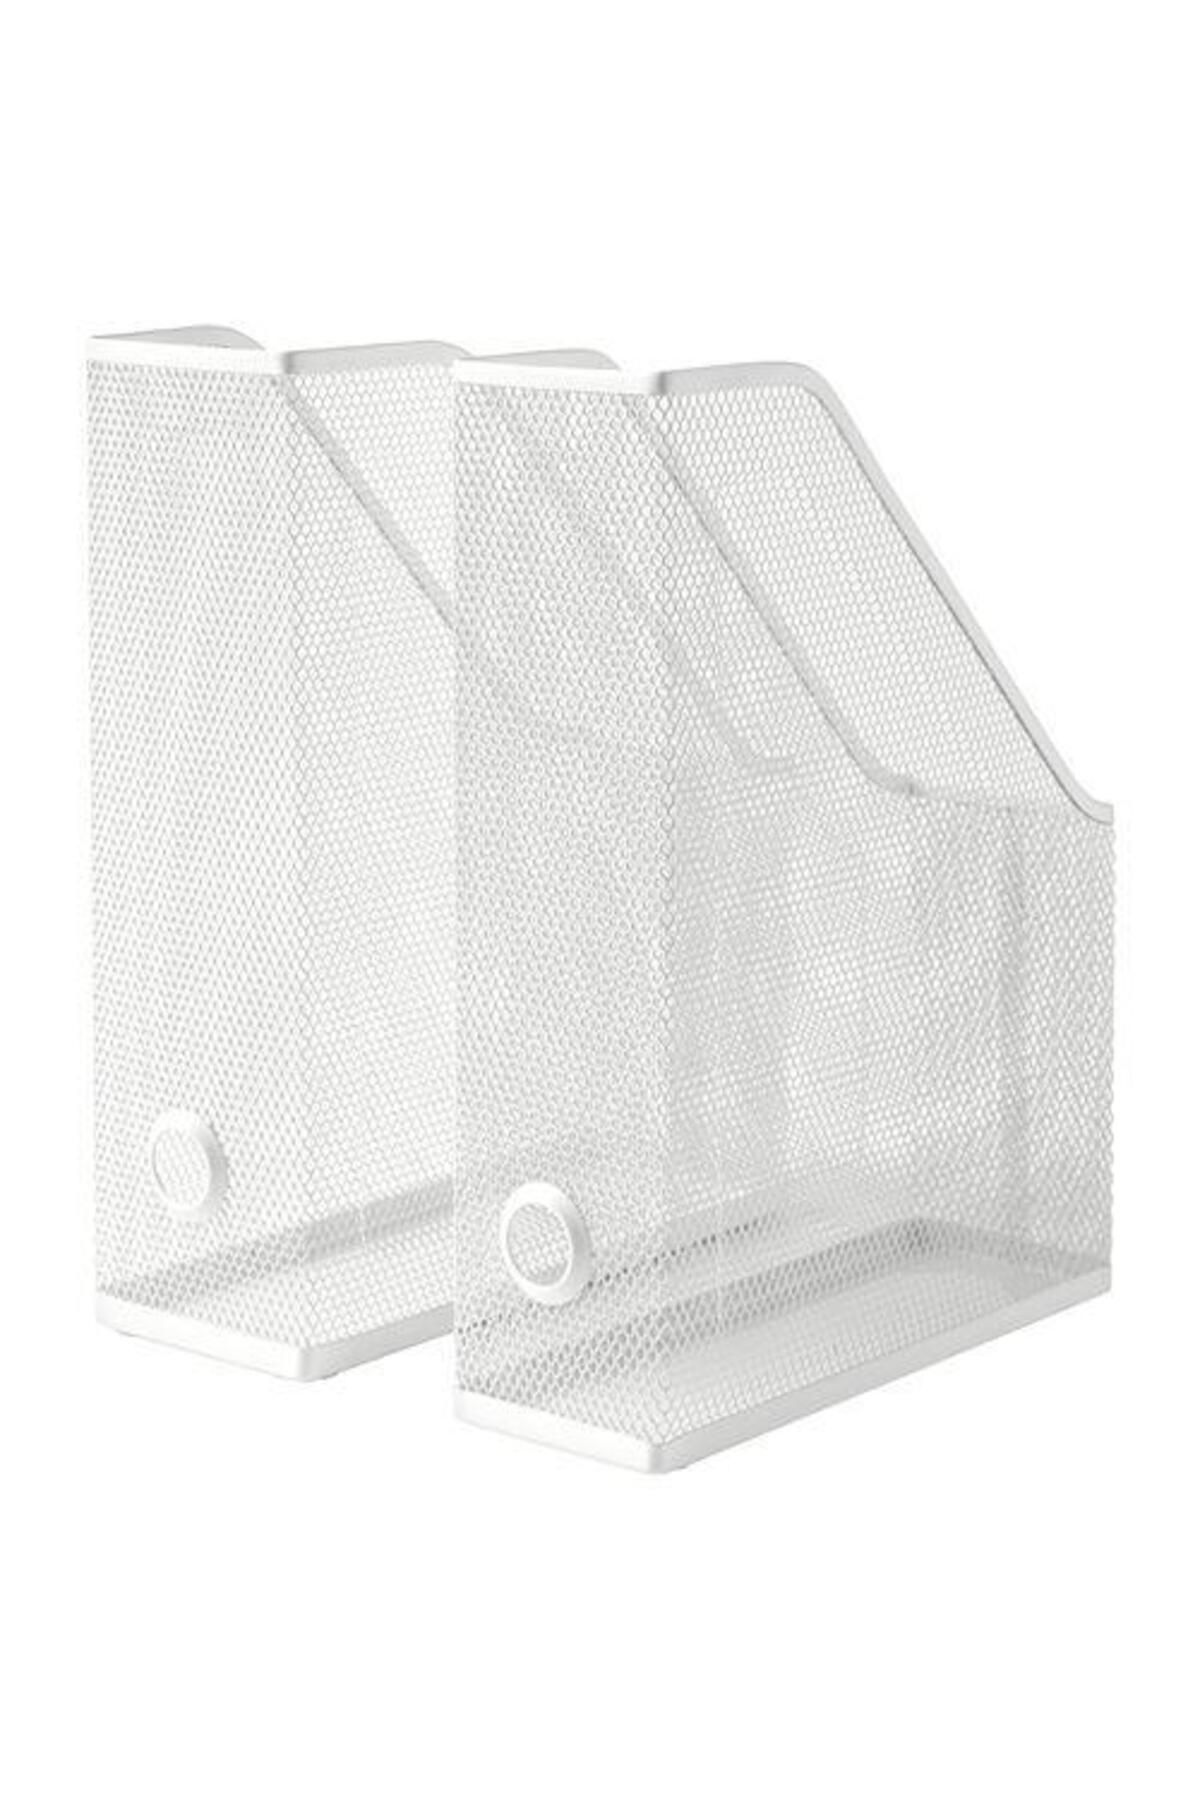 IKEA 2 Li Dosyalık-dergilik Meridyendukkan Beyaz ,metal Dosya Düzenleme